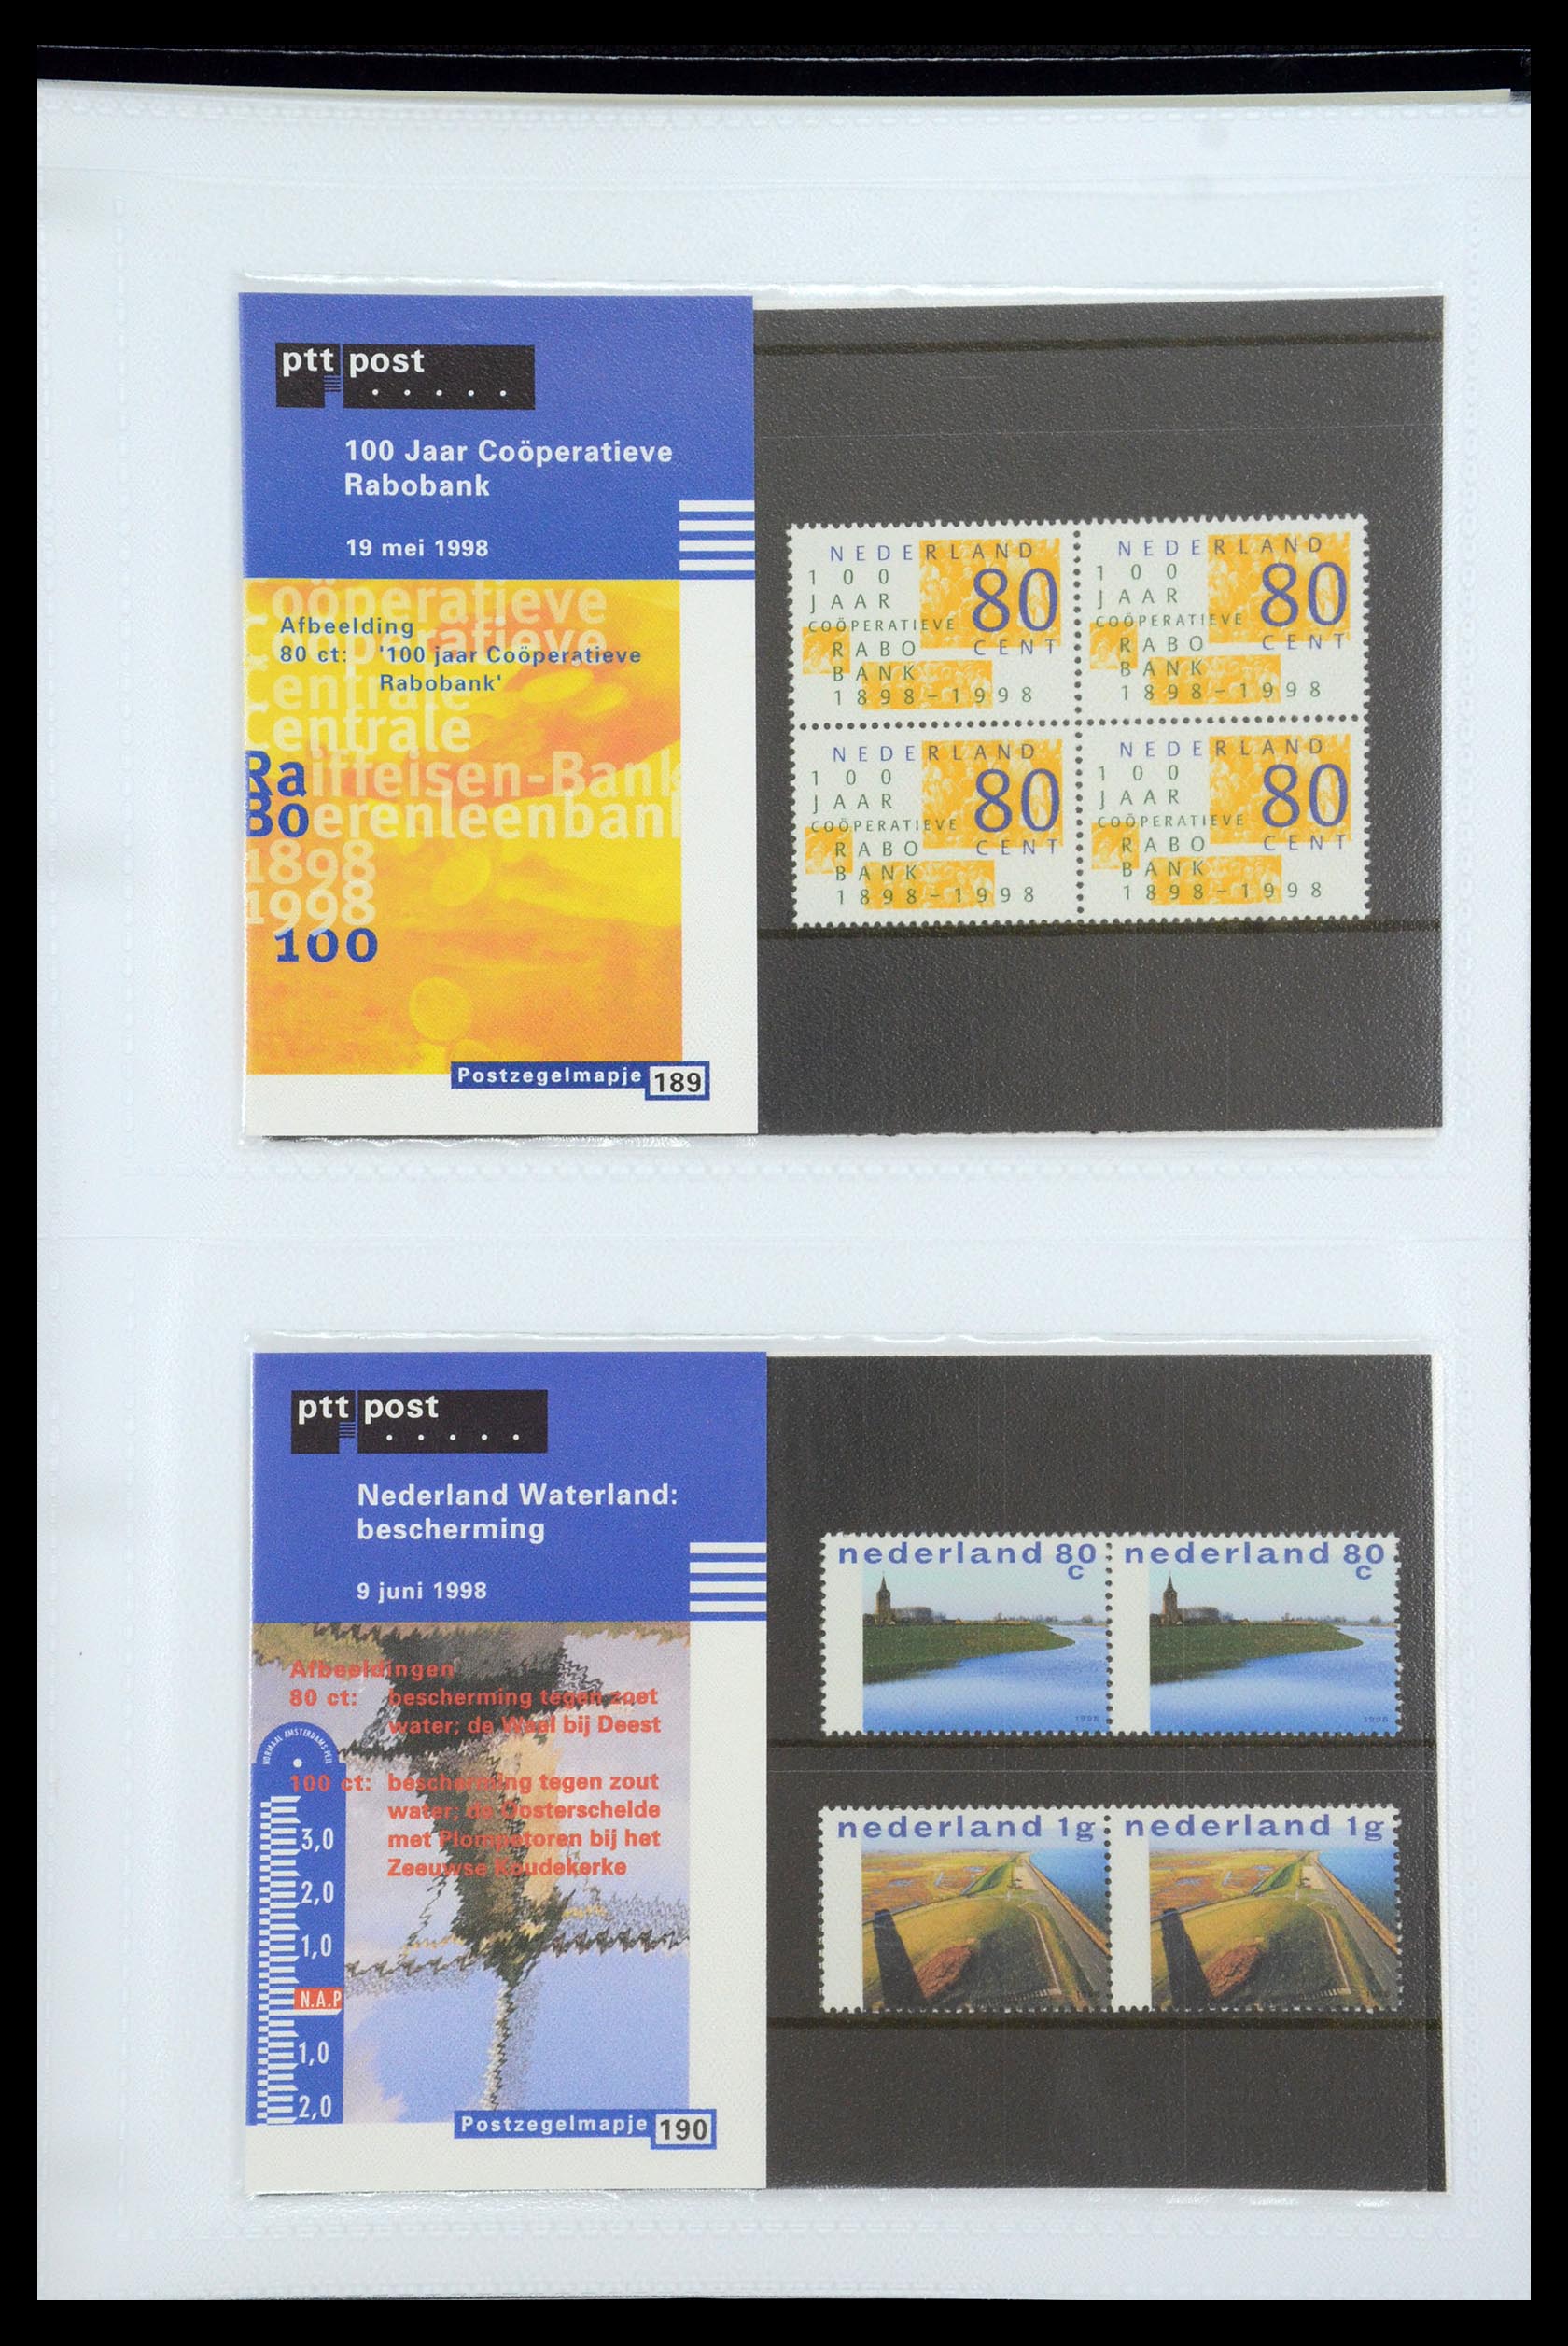 35947 098 - Stamp Collection 35947 Netherlands PTT presentation packs 1982-2019!